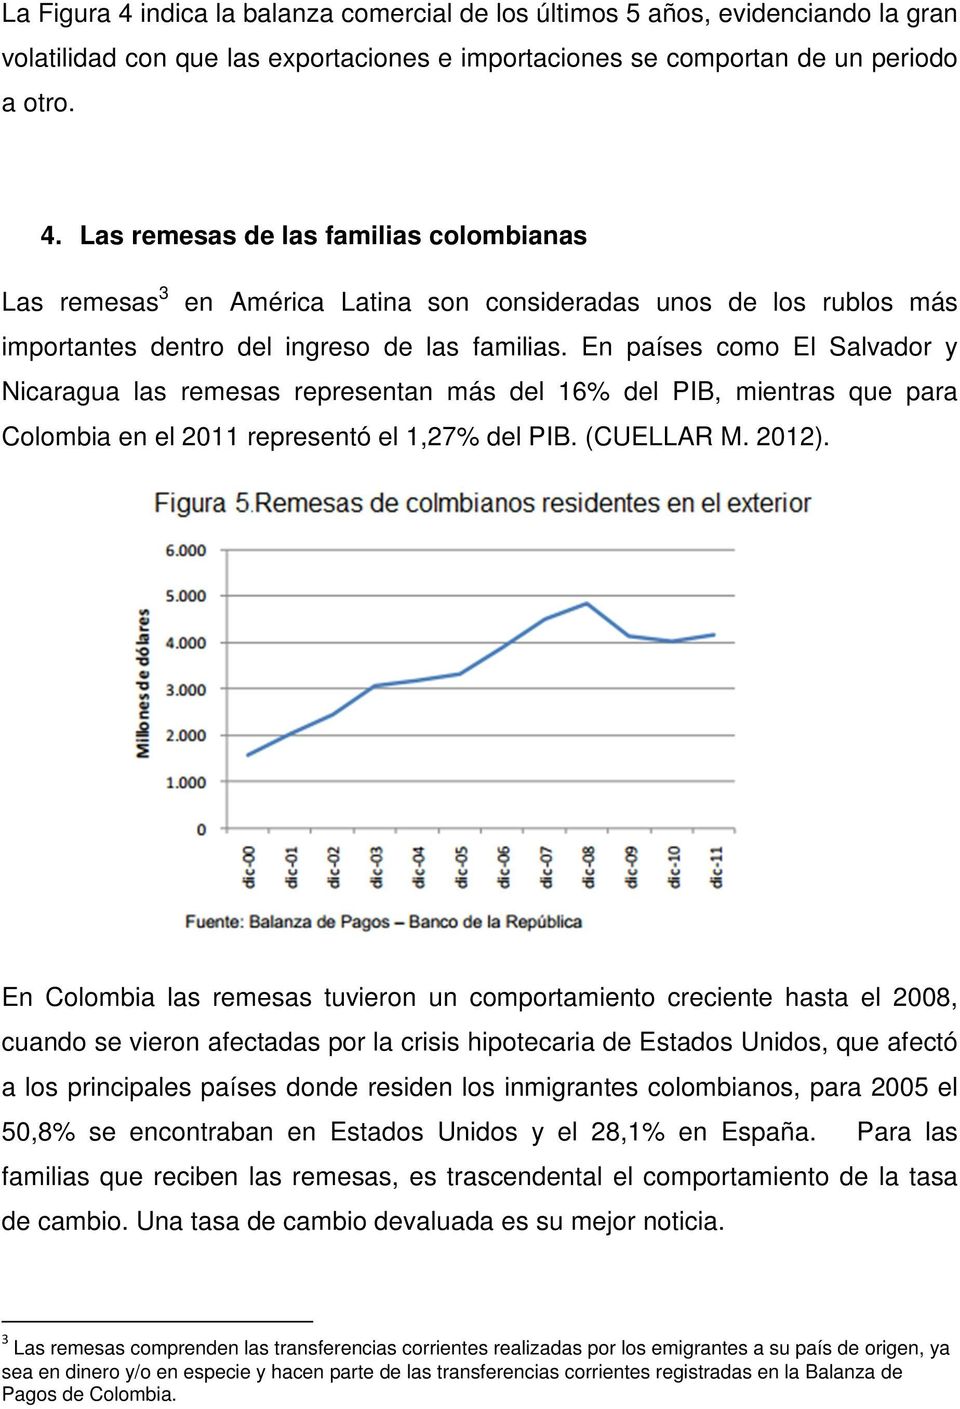 En Colombia las remesas tuvieron un comportamiento creciente hasta el 2008, cuando se vieron afectadas por la crisis hipotecaria de Estados Unidos, que afectó a los principales países donde residen